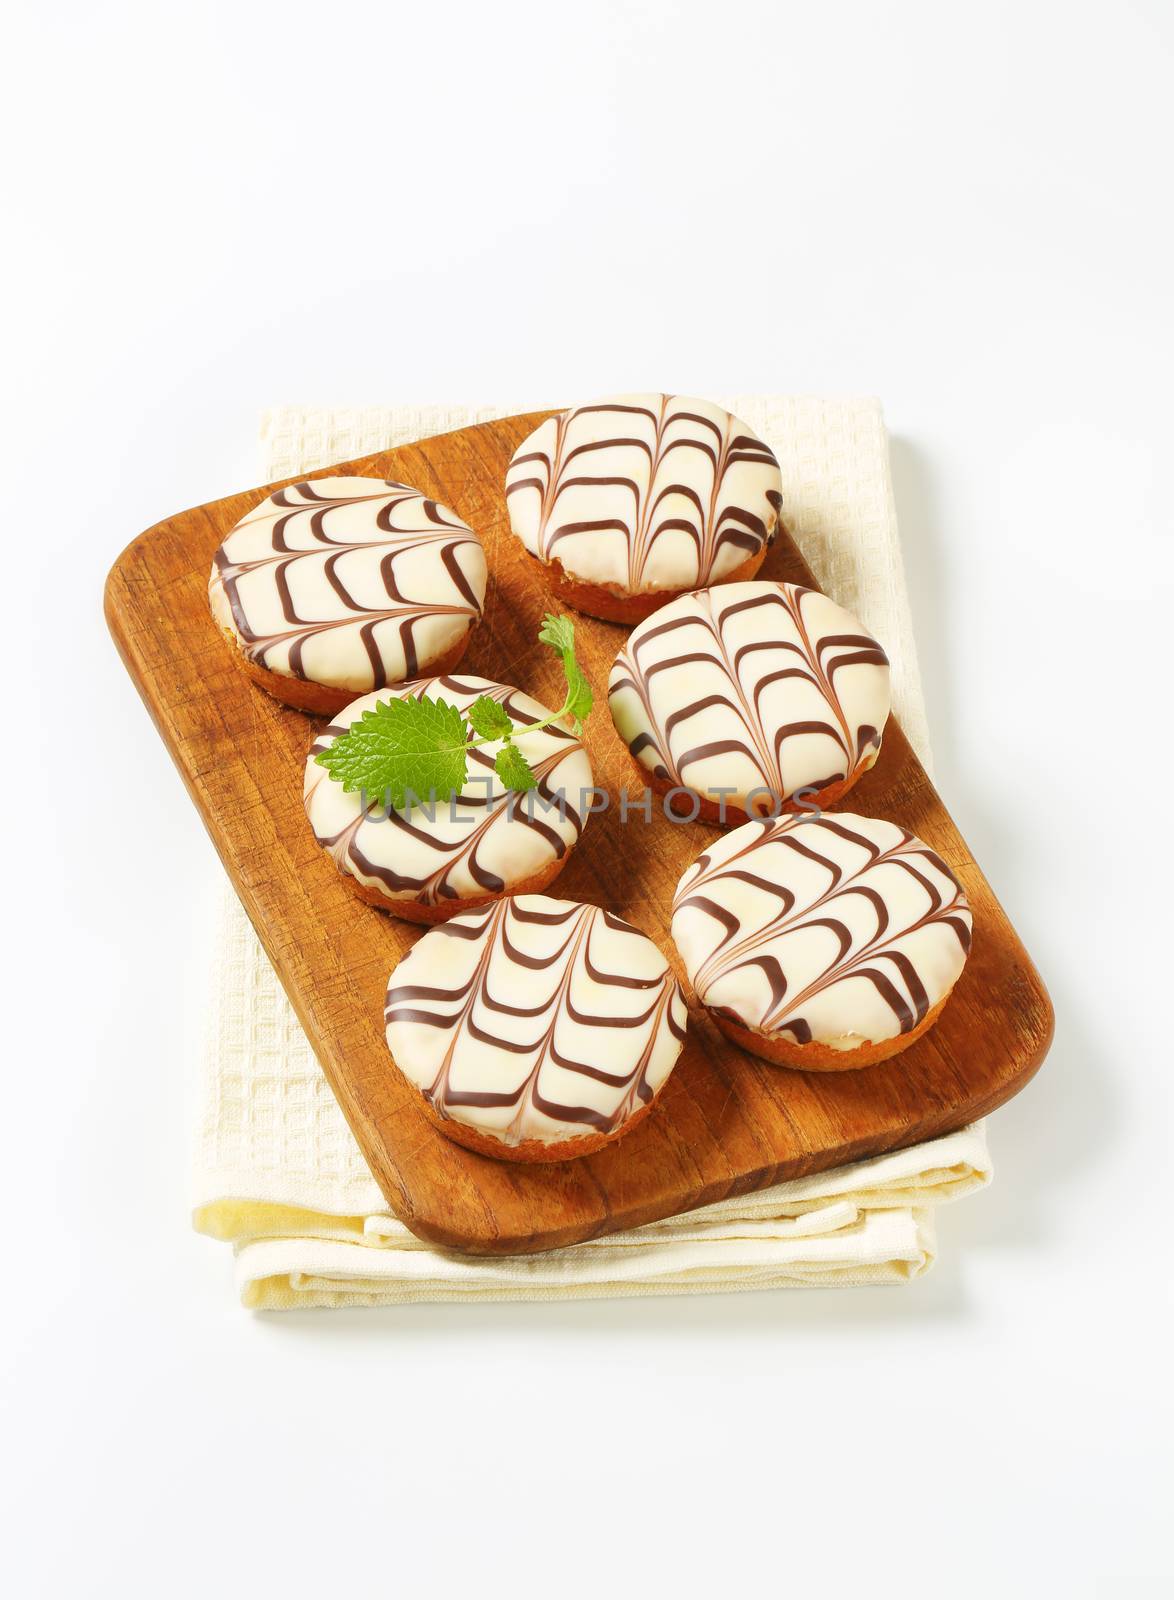 Chocolate-glazed mini cakes by Digifoodstock